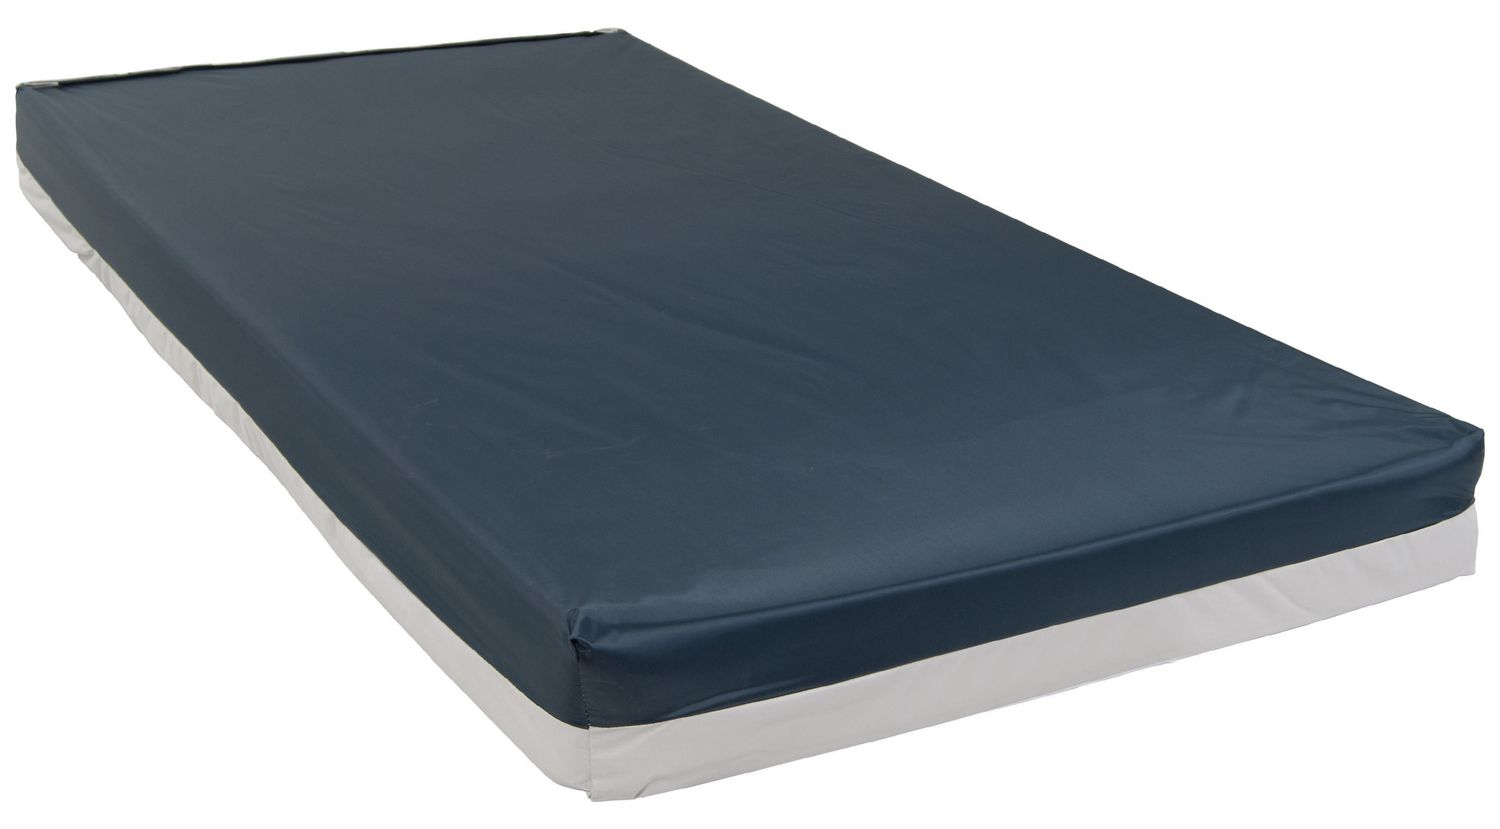 bed mattress 80 x 54 5 queen